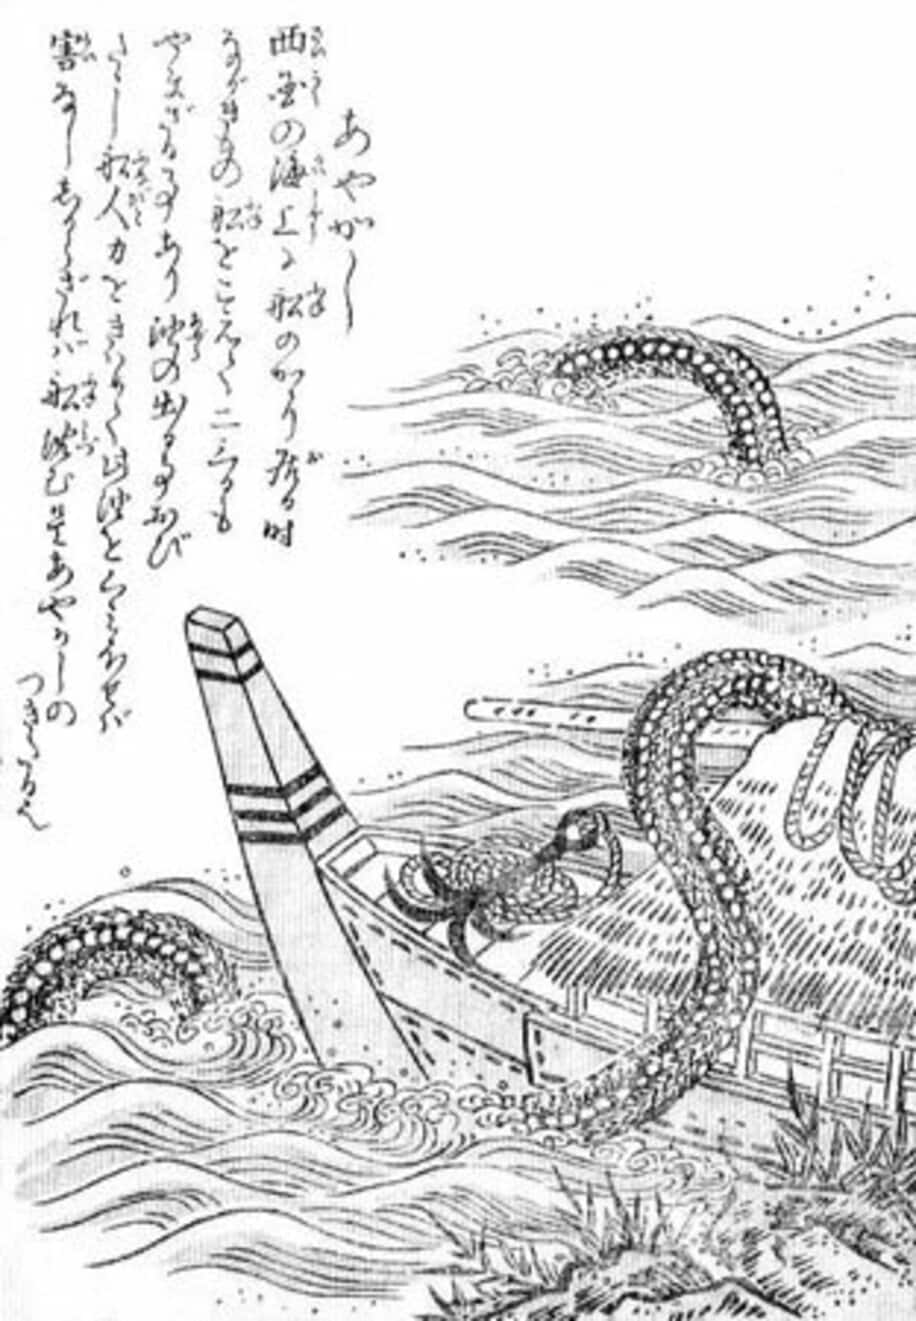  鳥山石燕の妖怪画集「今昔百鬼拾遺」に描かれている「あやかし」